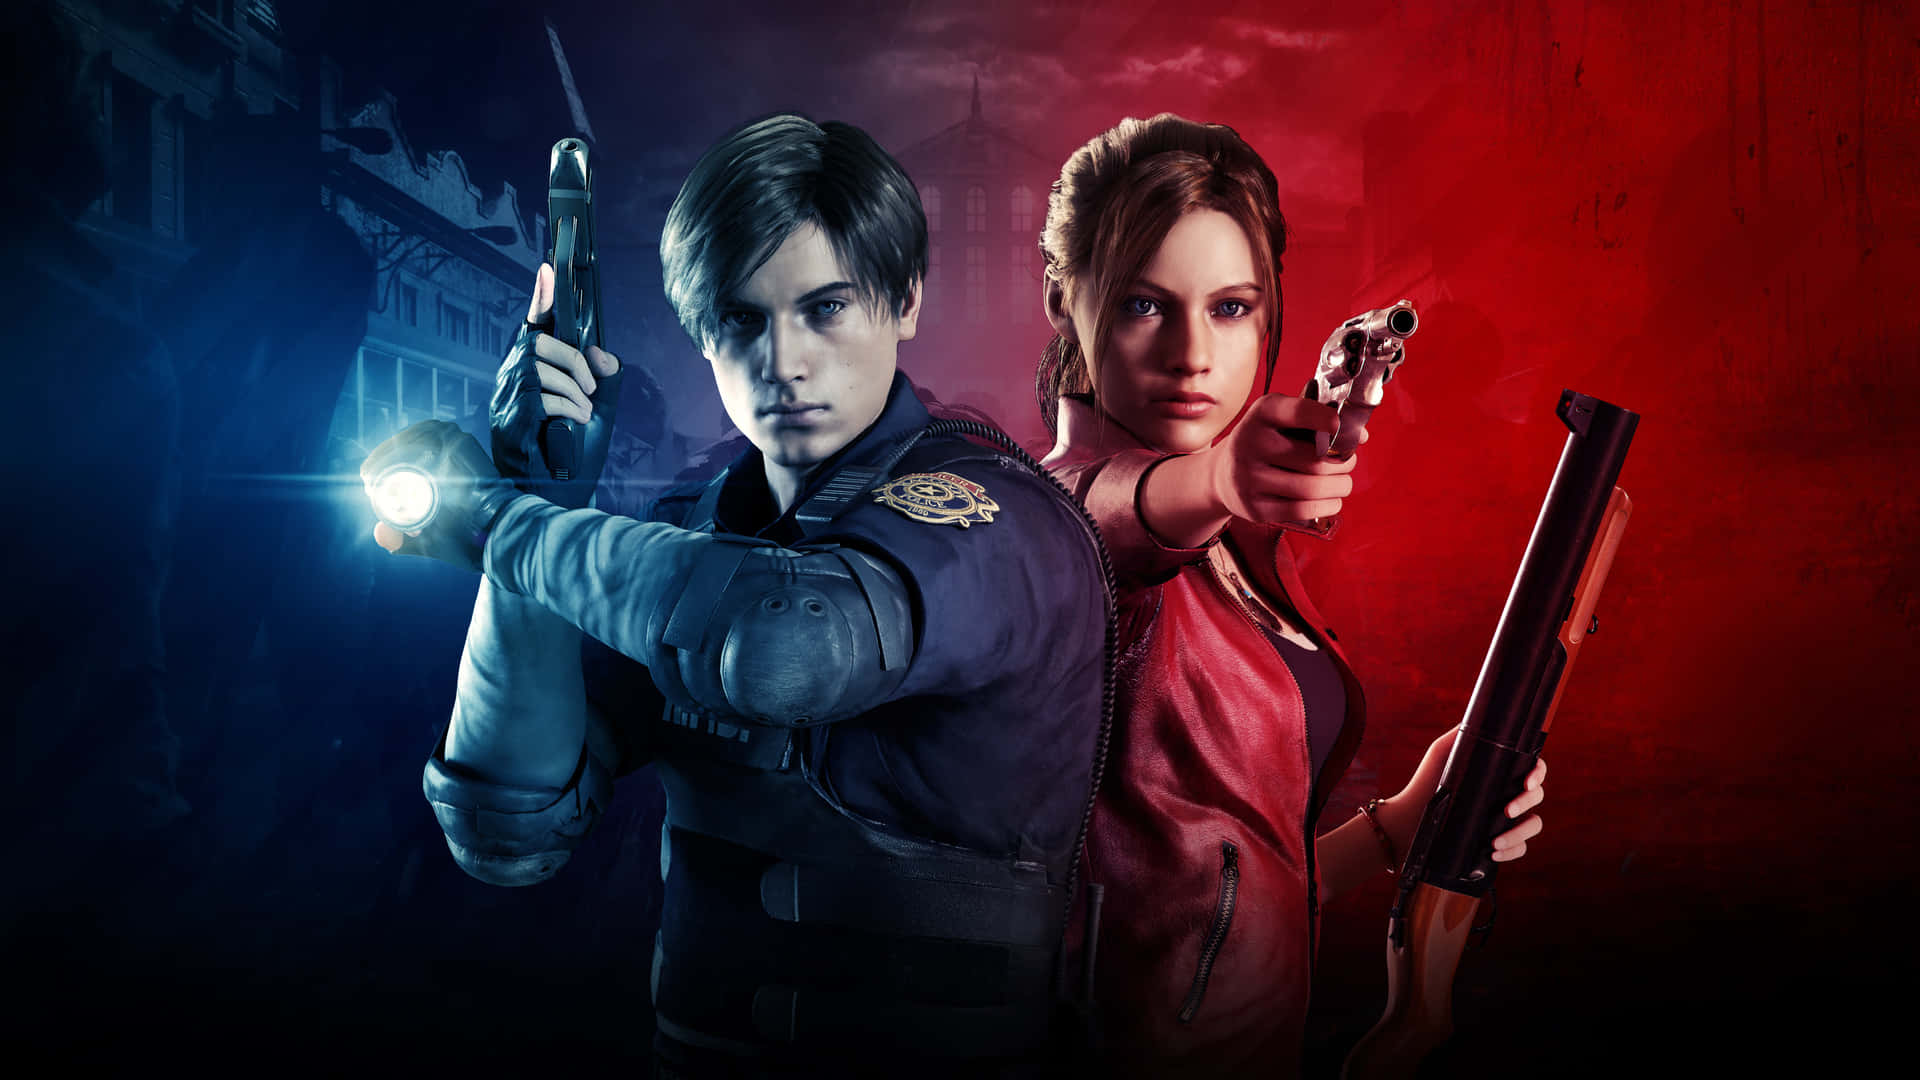 Preparatiall'inaspettato - Claire Redfield Da Resident Evil 2 Sfondo